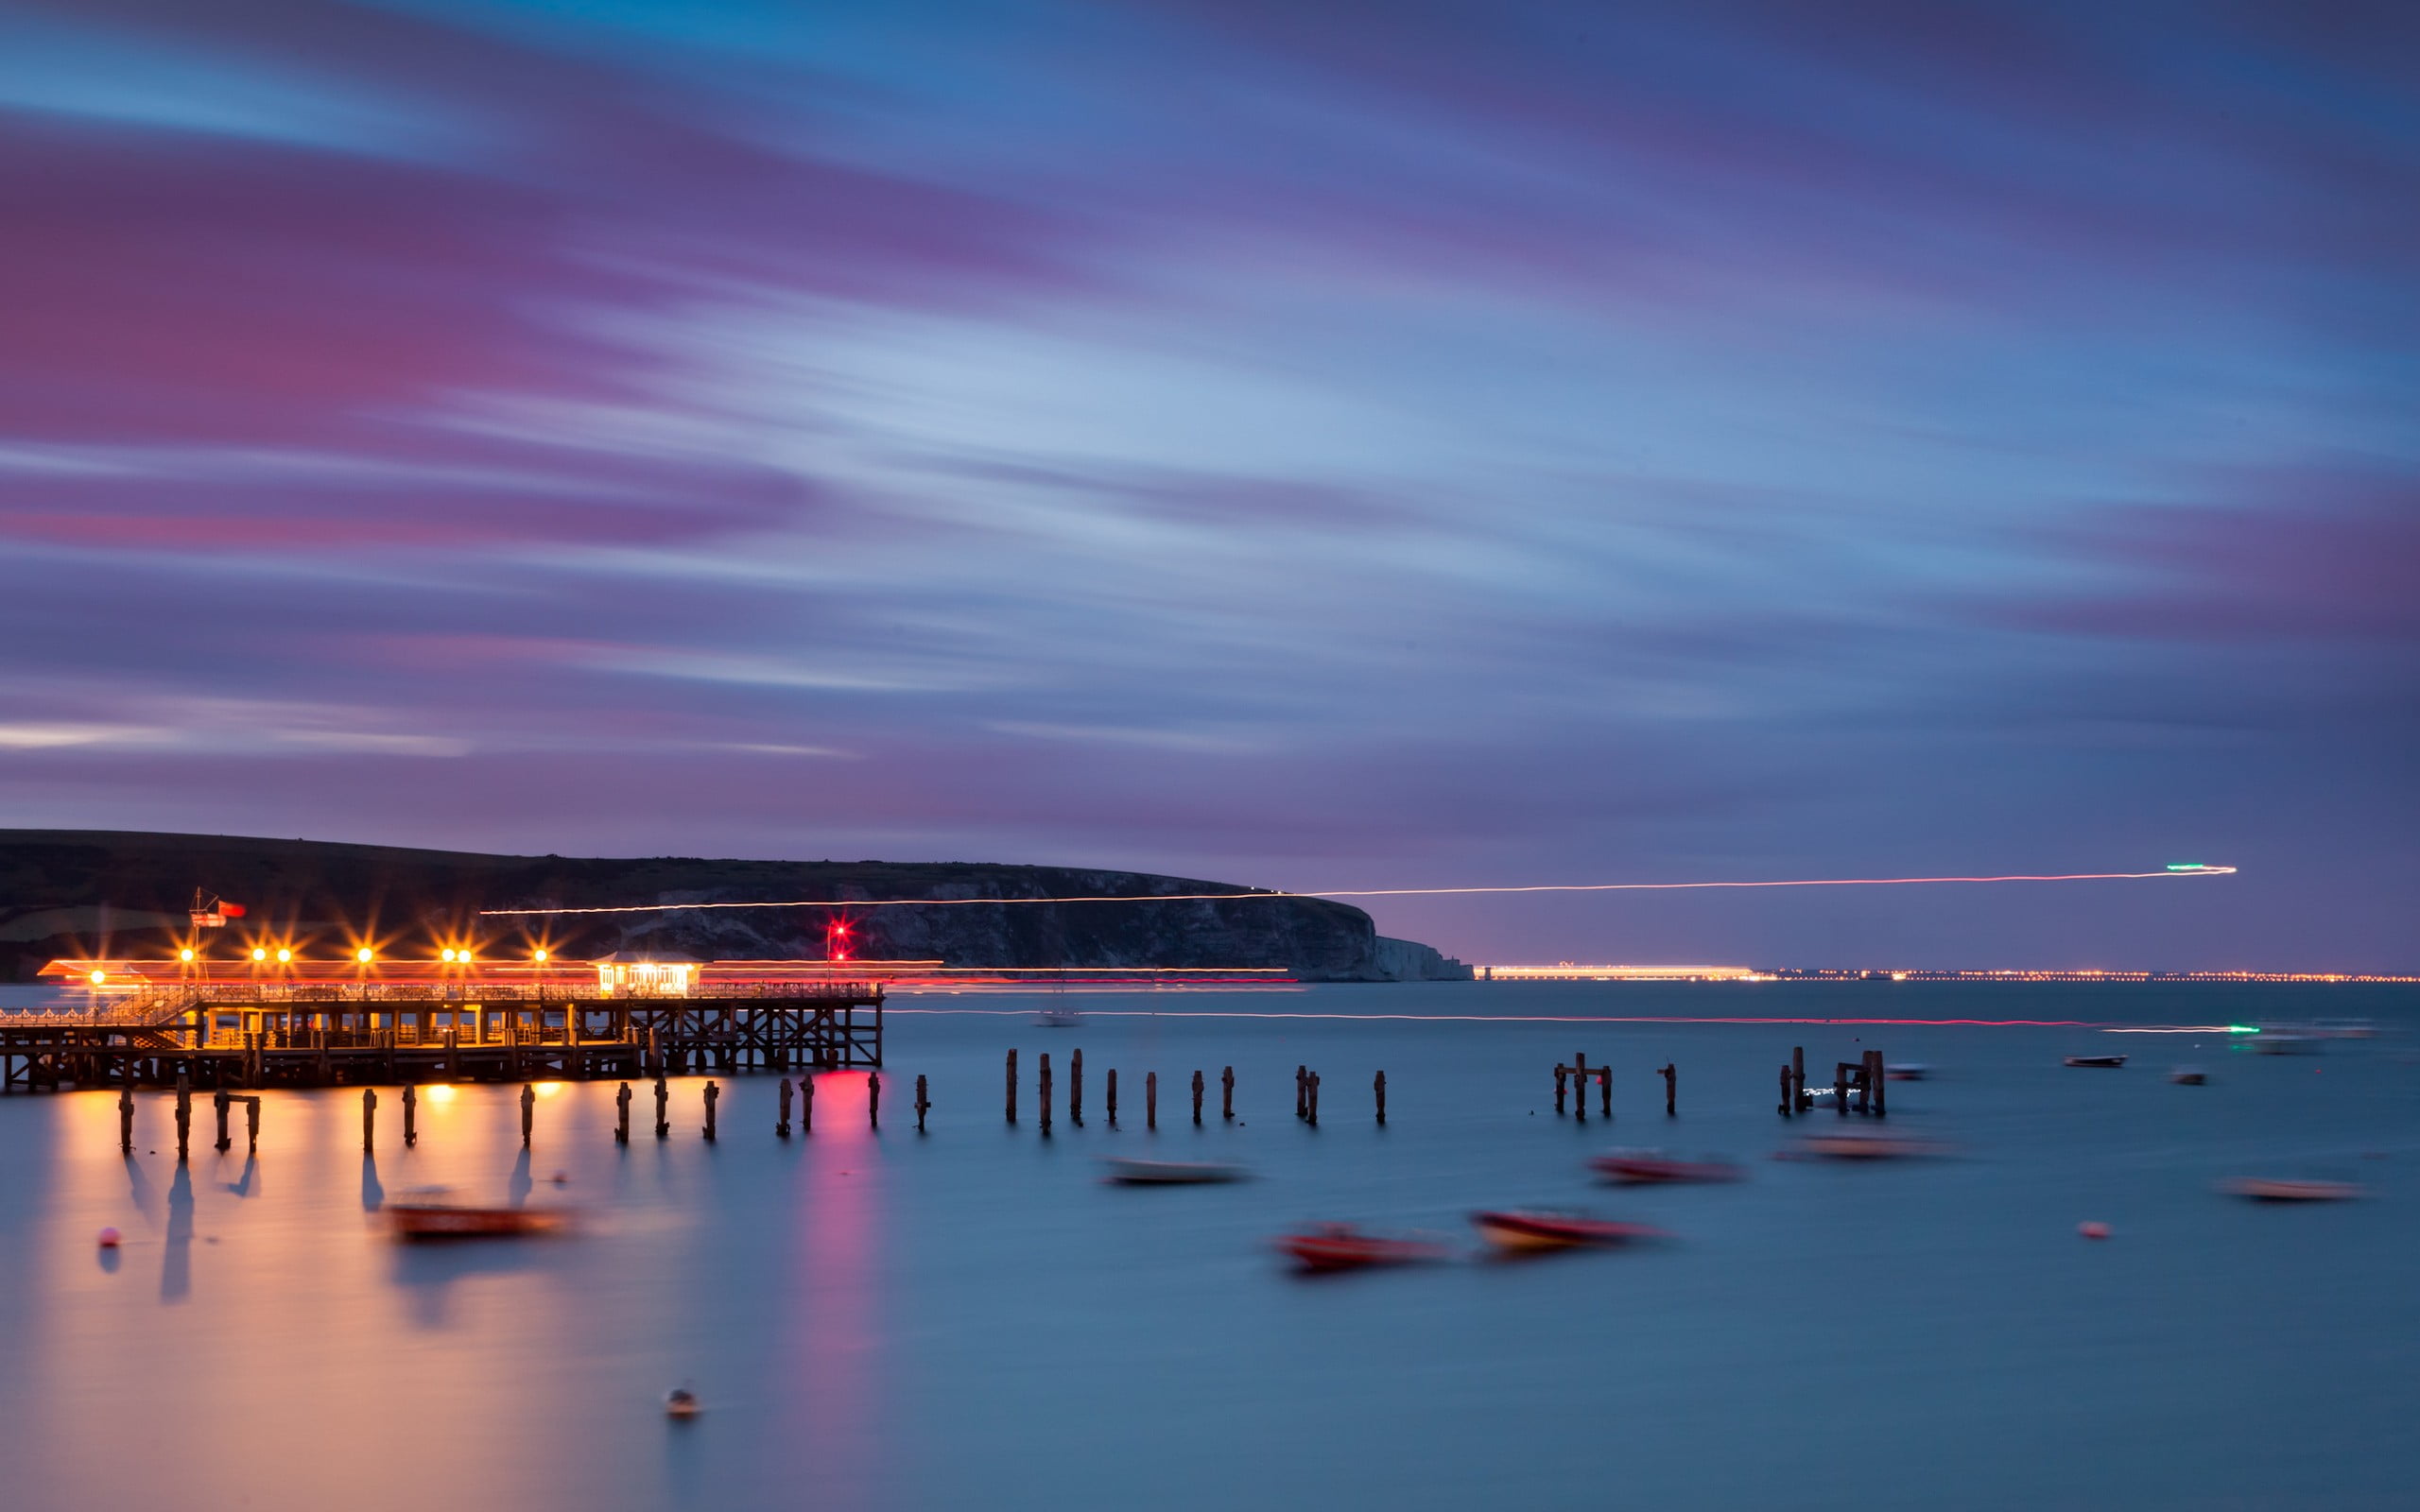 illuminated pier photo, nature, sea, lights